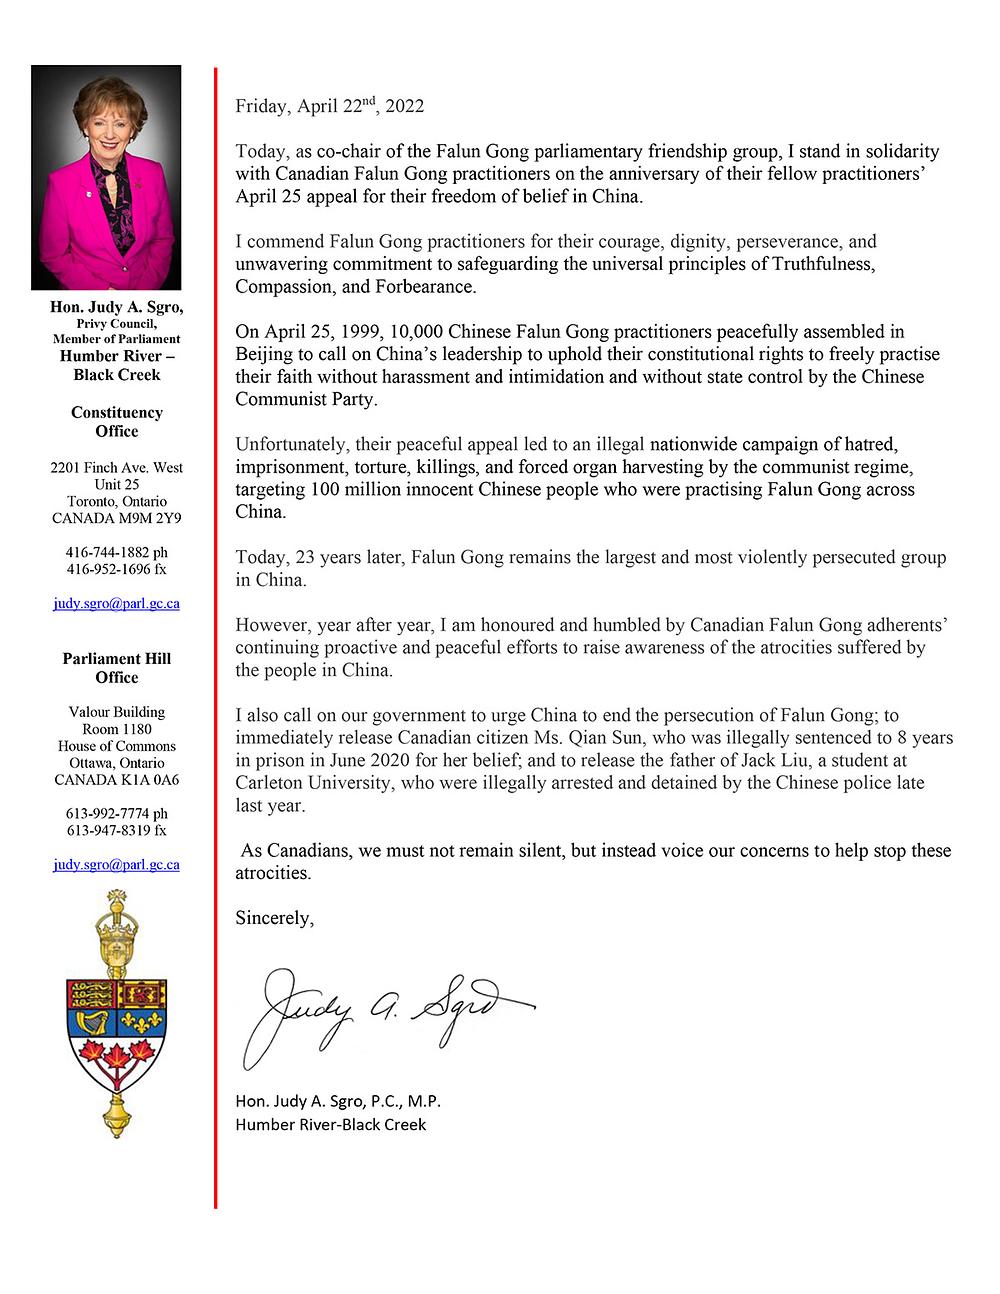 Pismo poslanice Judy Sgro, kopredsjedavajuće parlamentarne grupe prijatelja  Falun Gonga. 